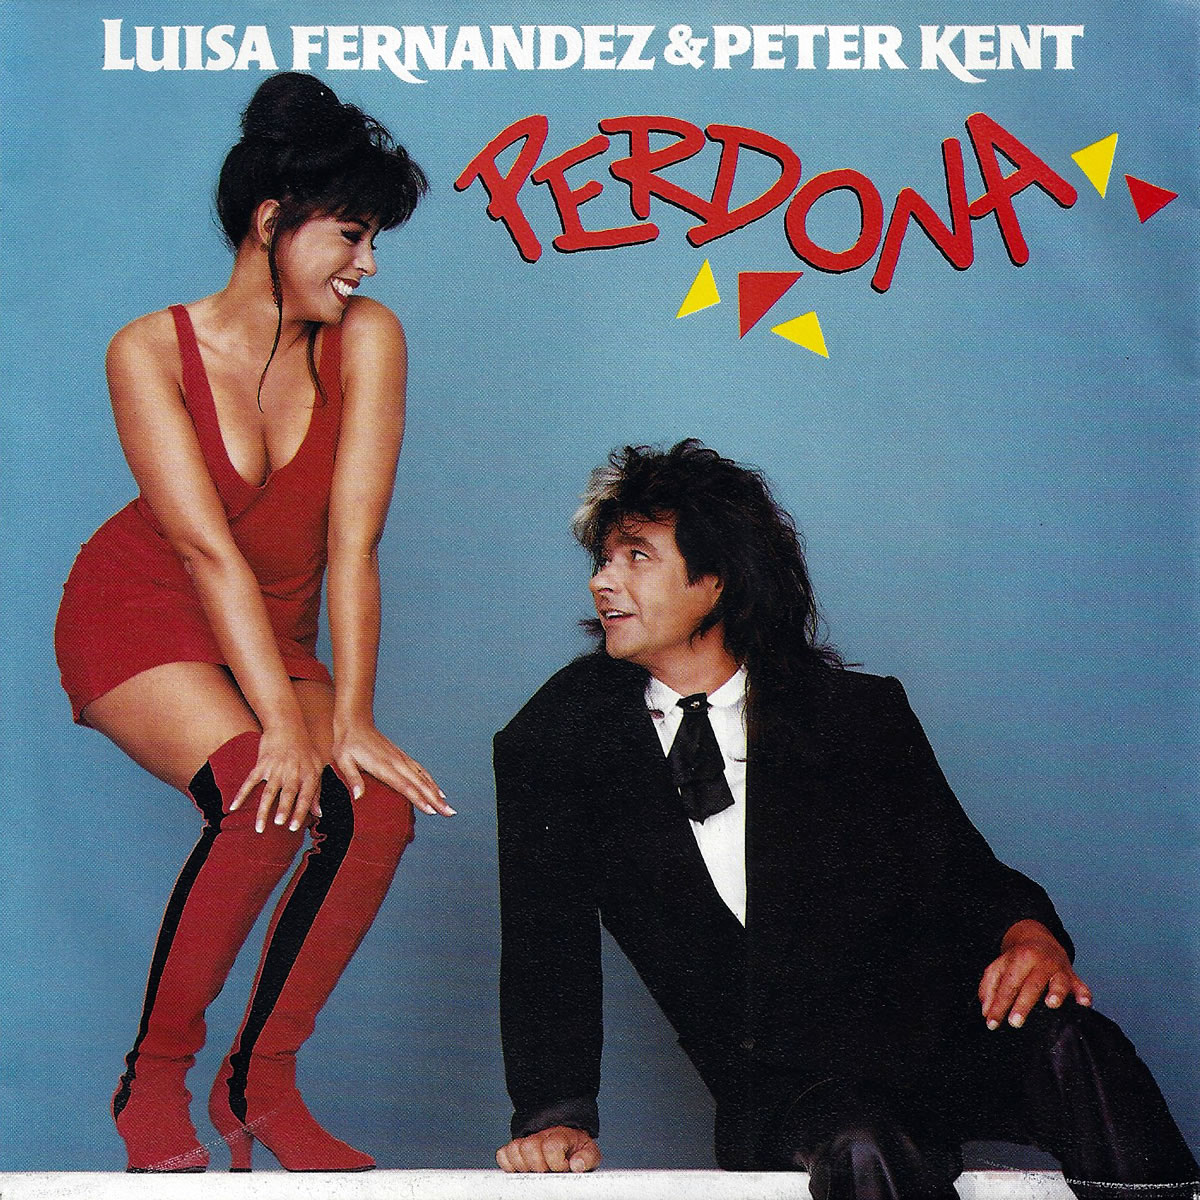 Luisa Fernandez & Peter Kent Perdona cover artwork